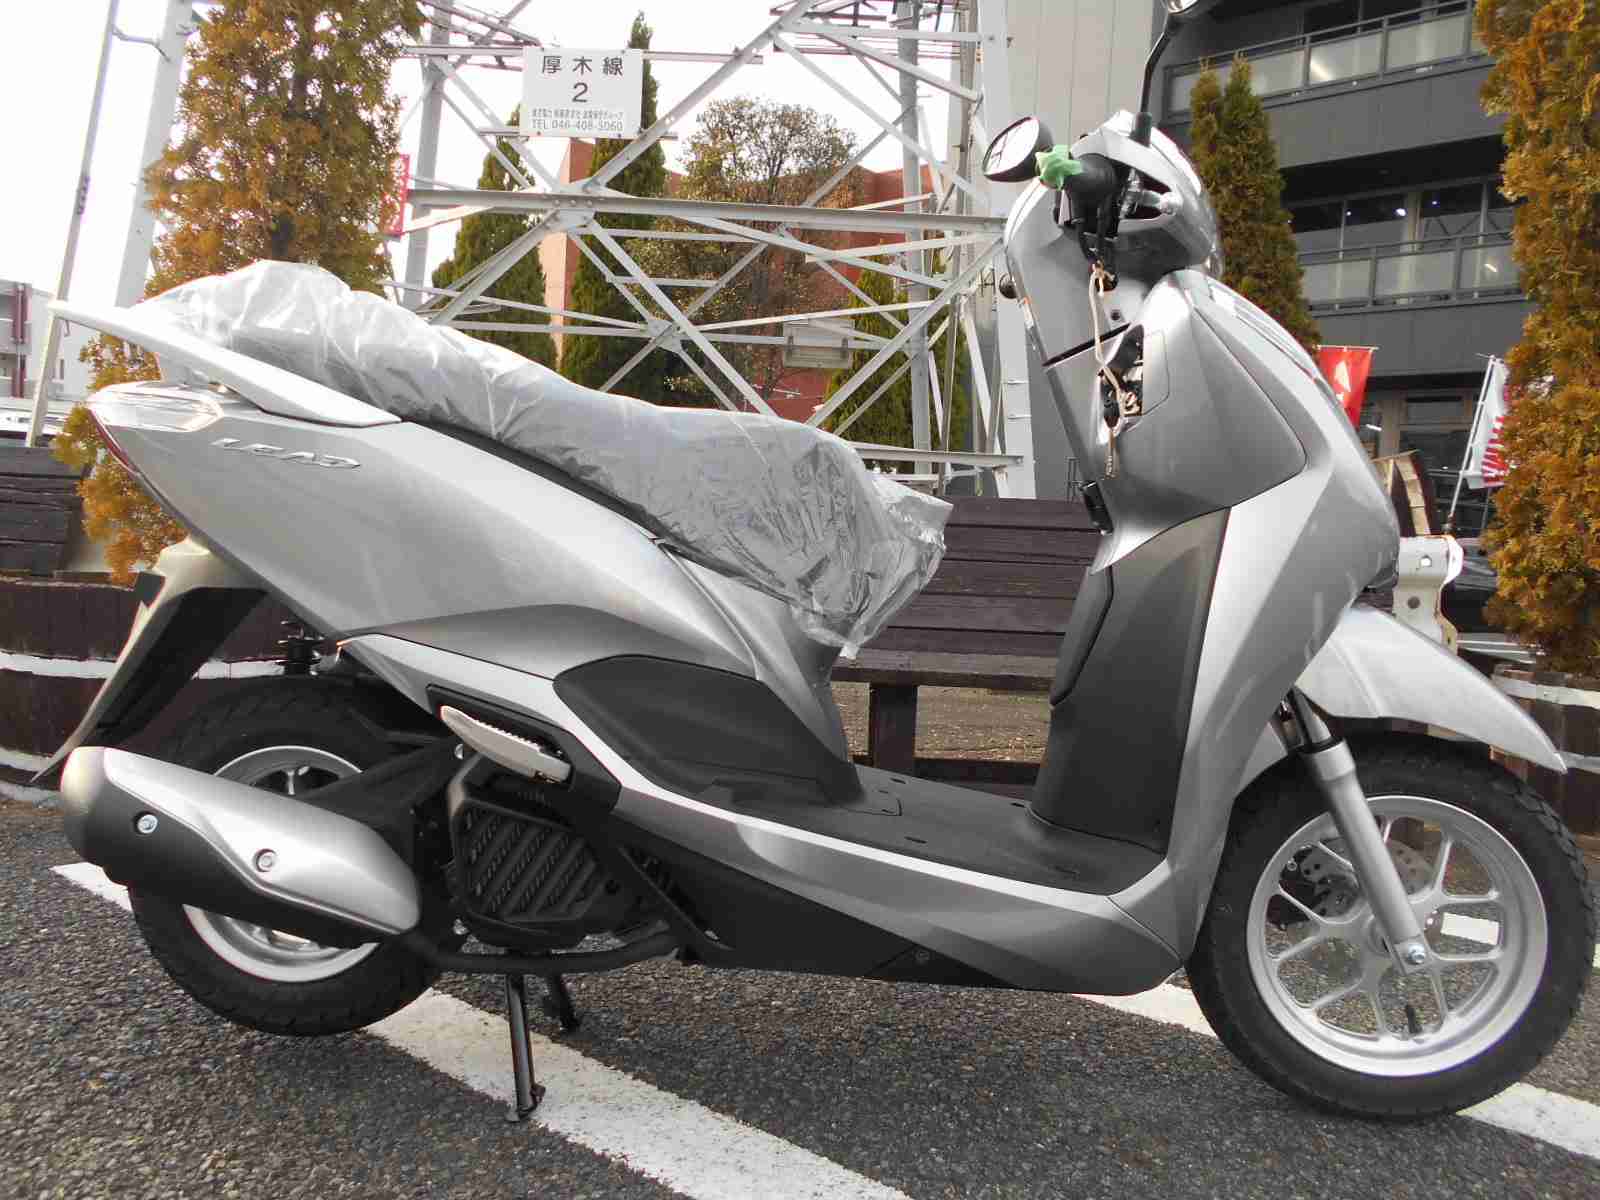 ホンダ リード125 バイク探し U Media ユーメディア 中古 バイク 新車バイク探しの決定版 神奈川 東京でバイク探すならユーメディア